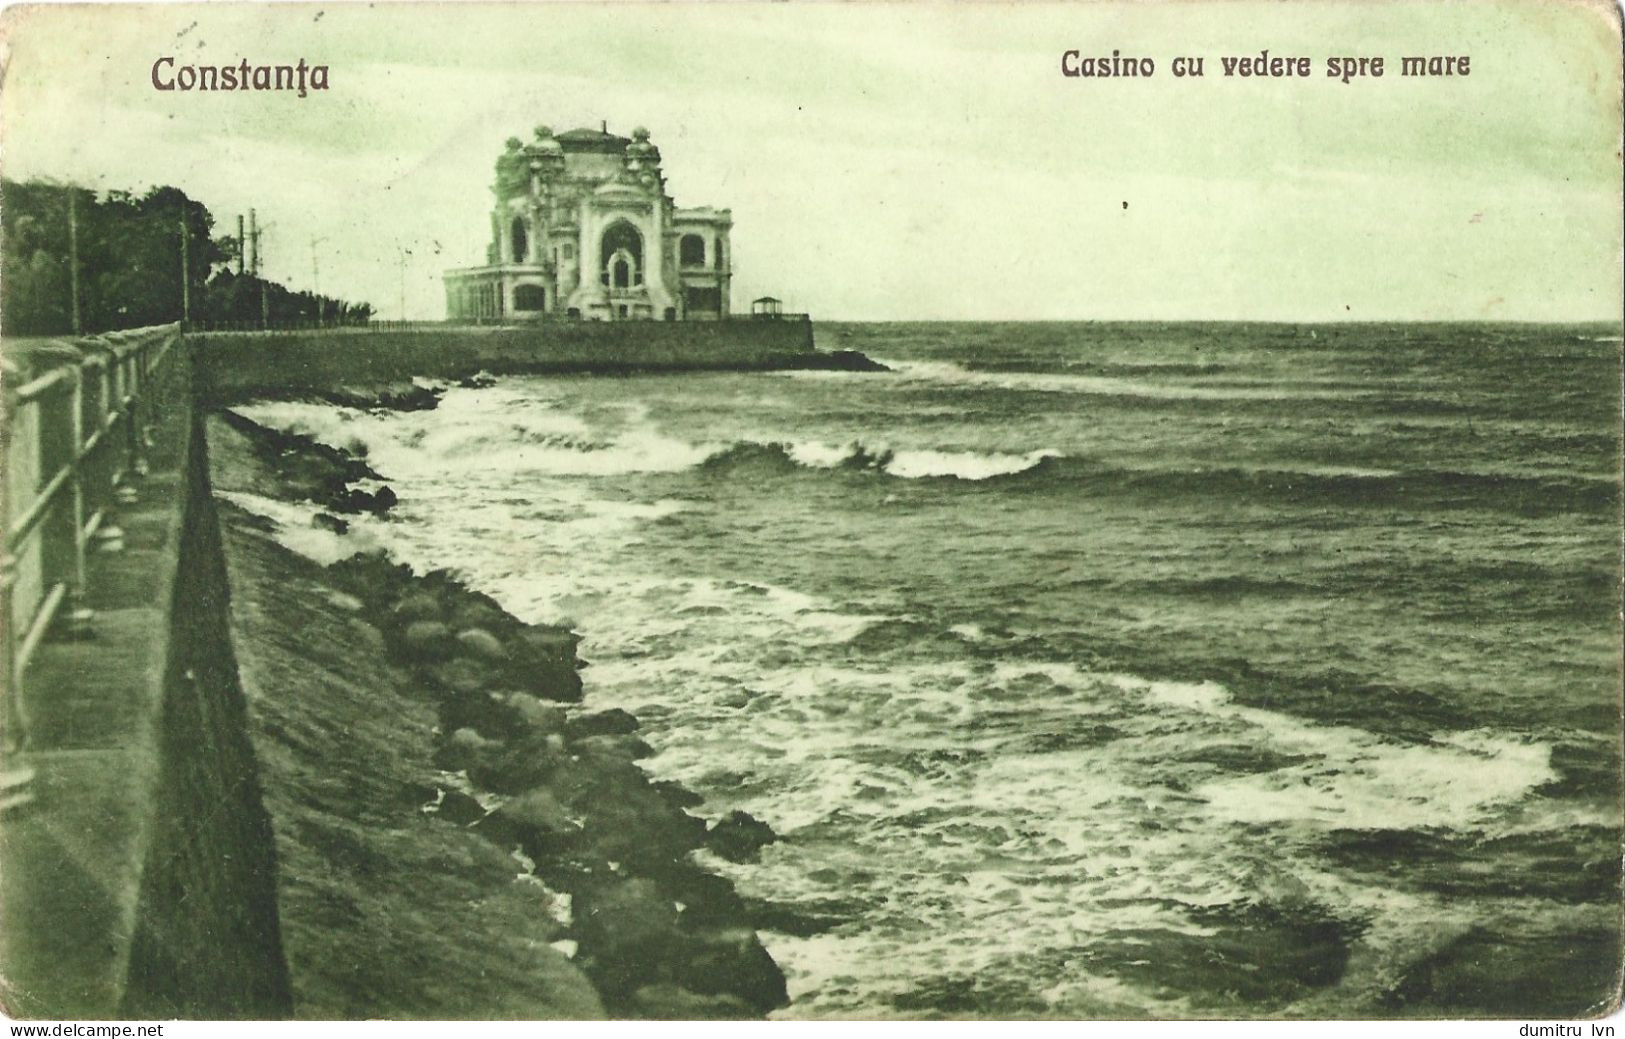 ROMANIA 1926 CONSTANTA - CASINO WITH SEA VIEW, BUILDING, ARCHITECTURE, CLIFF, SEASIDE - Rumänien